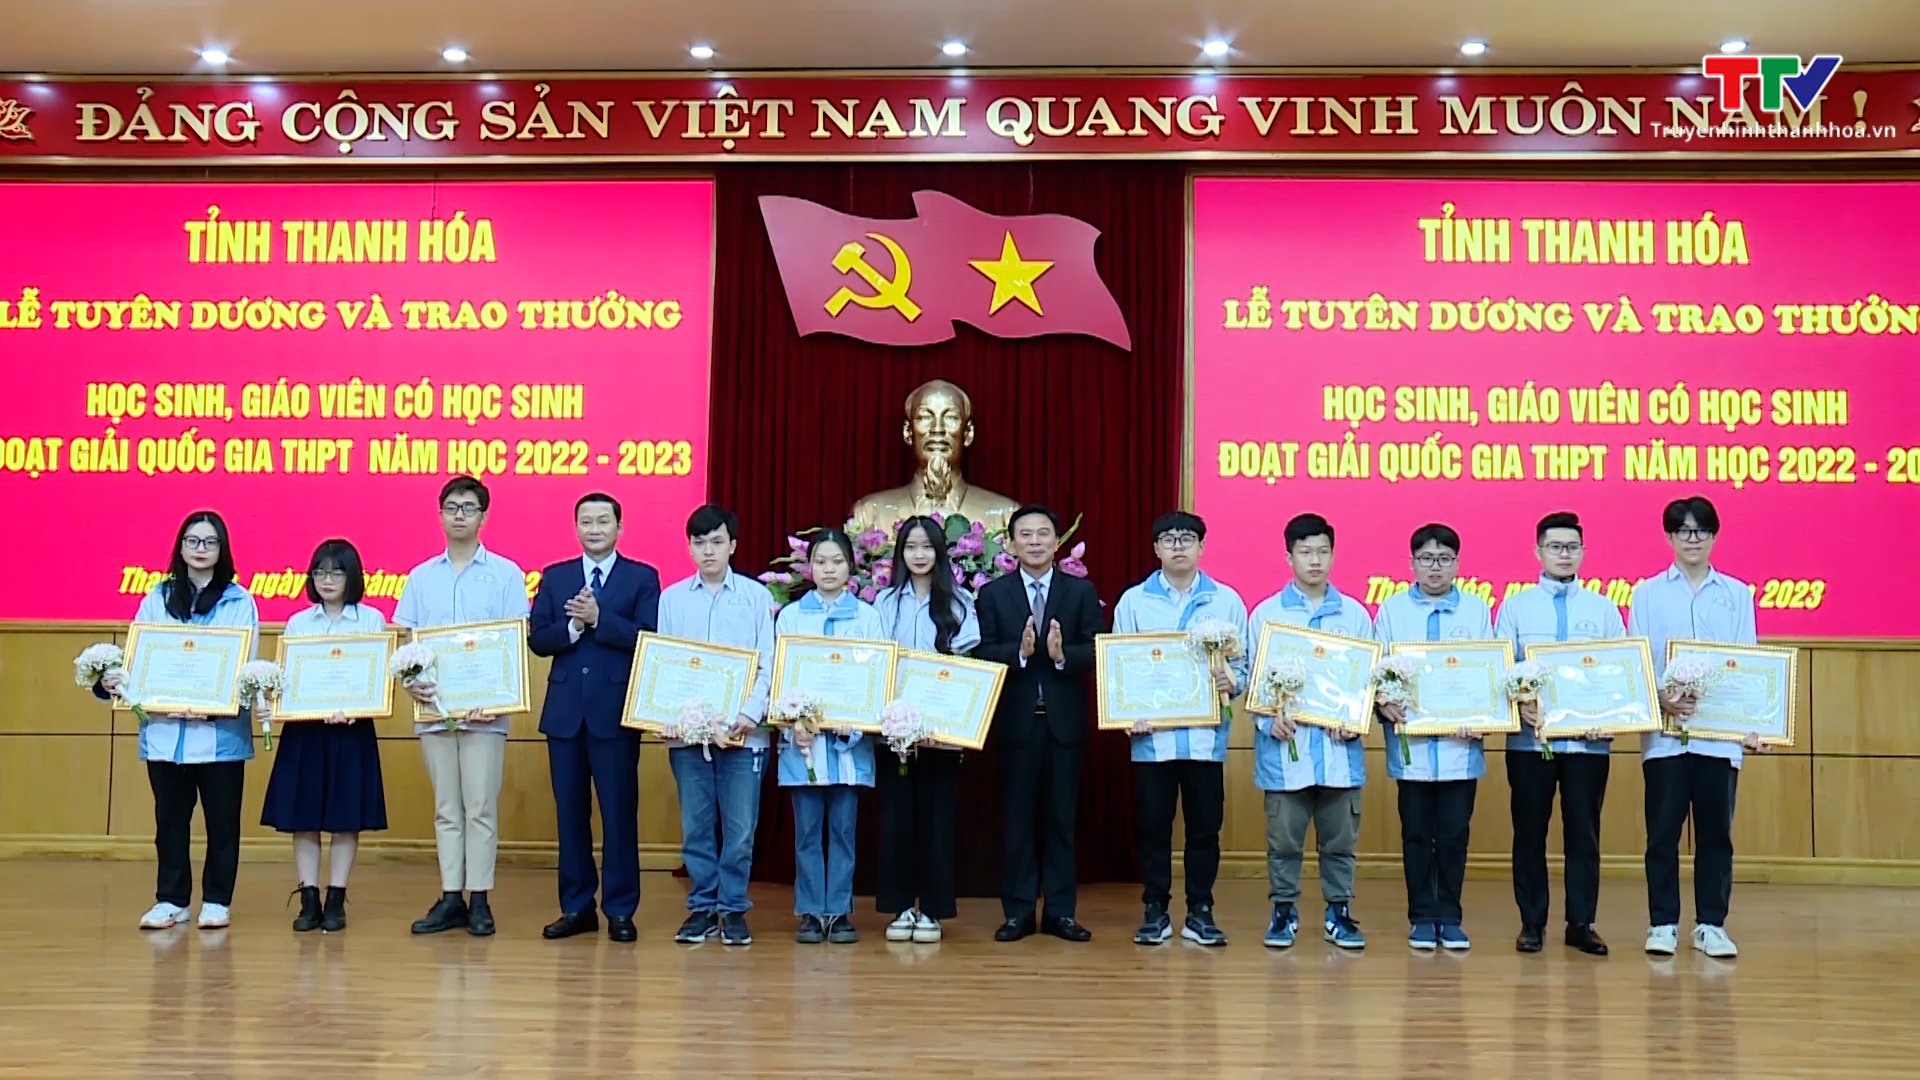 Tỉnh Thanh Hóa tuyên dương và trao thưởng học sinh, giáo viên  có học sinh đoạt giải quốc gia THPT năm học 2022 - 2023 - Ảnh 8.